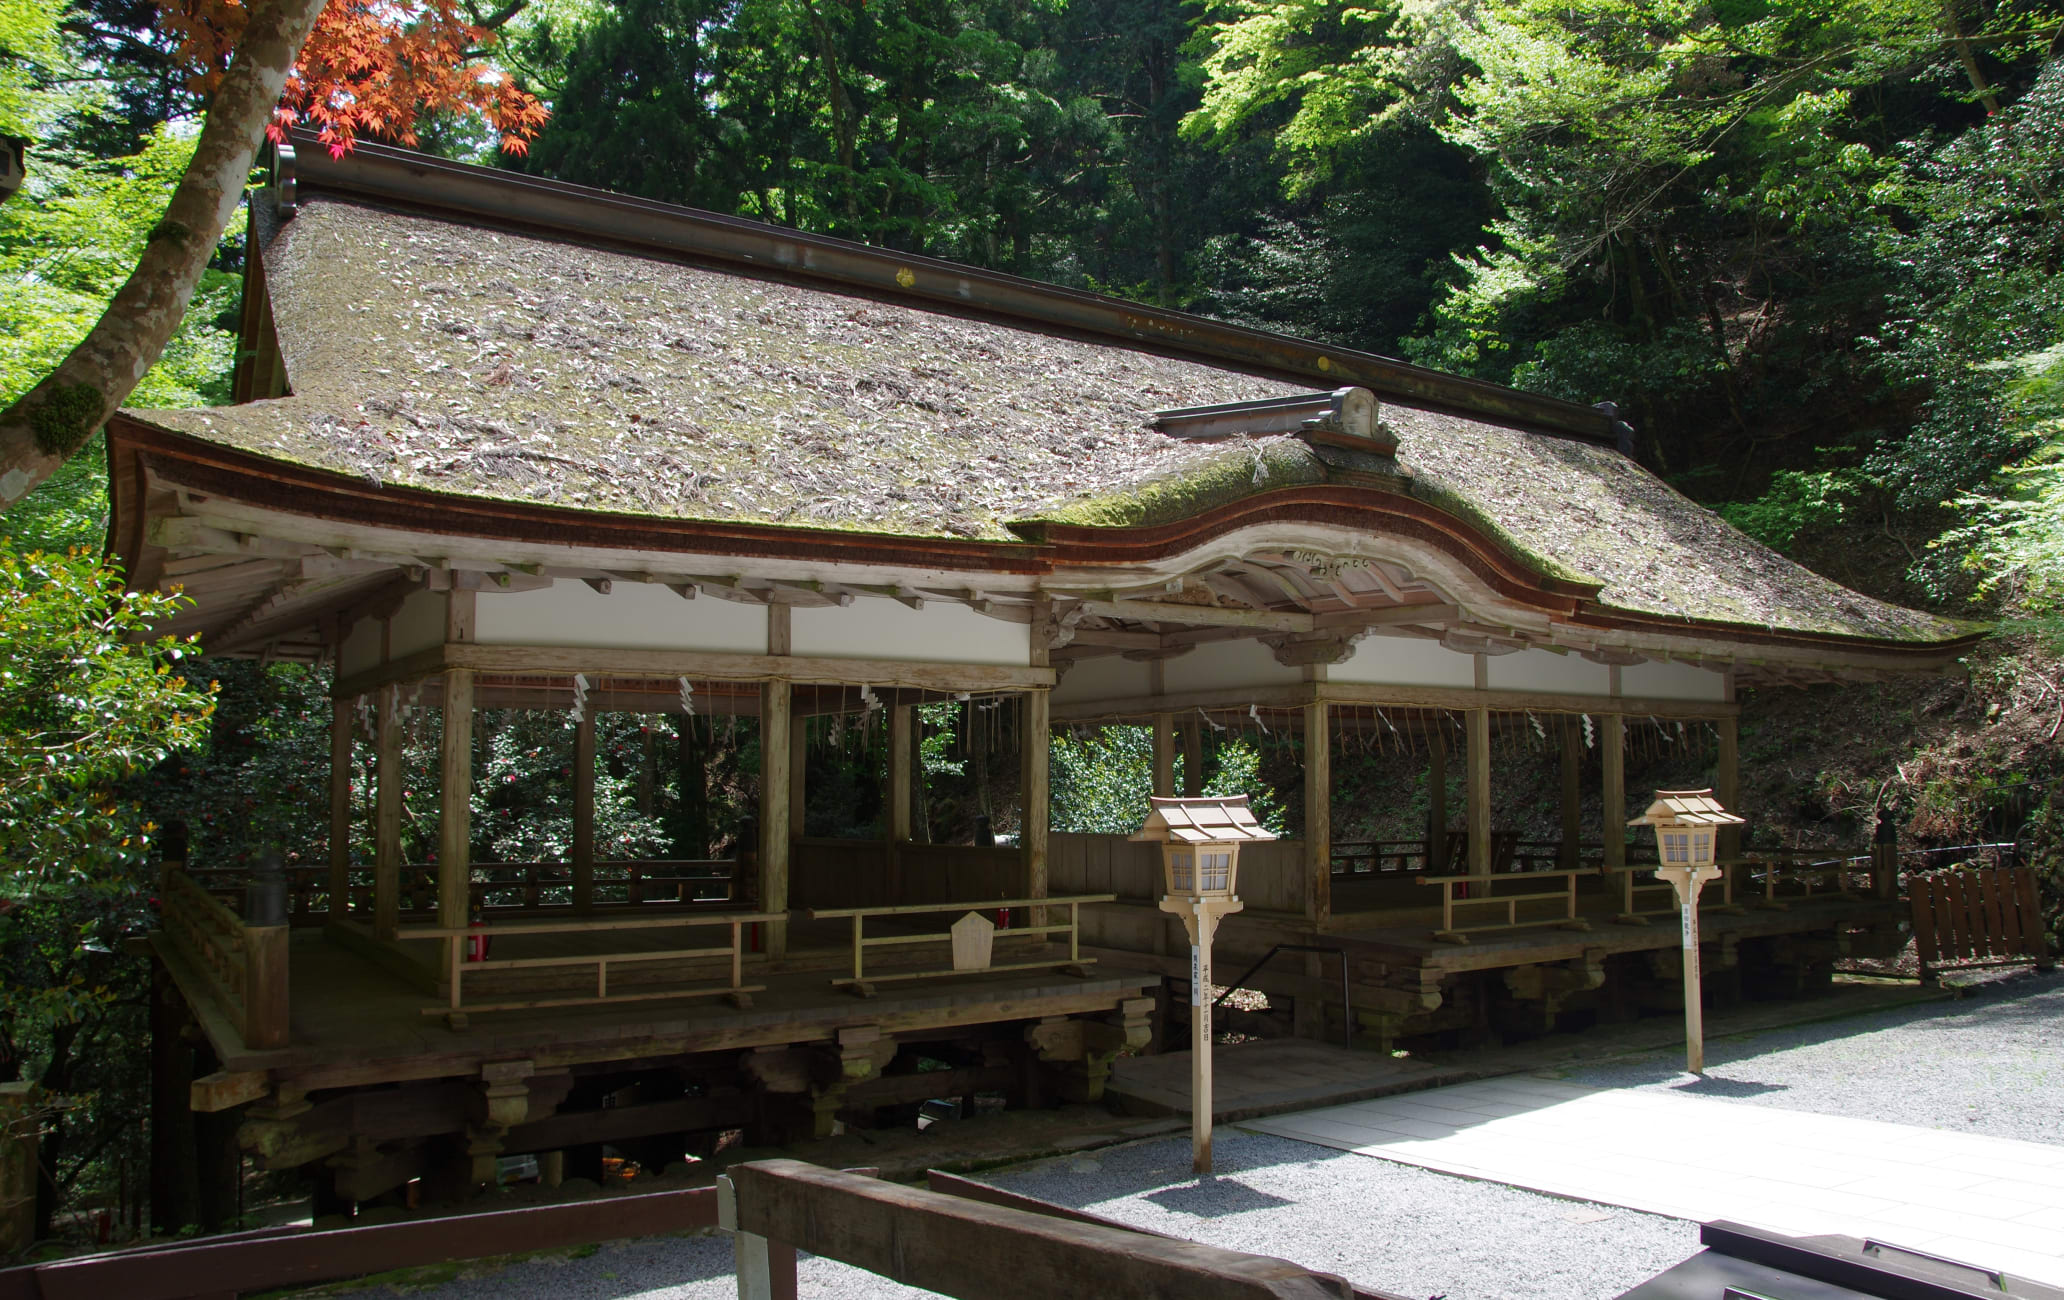 Yuki-jinja Shrine